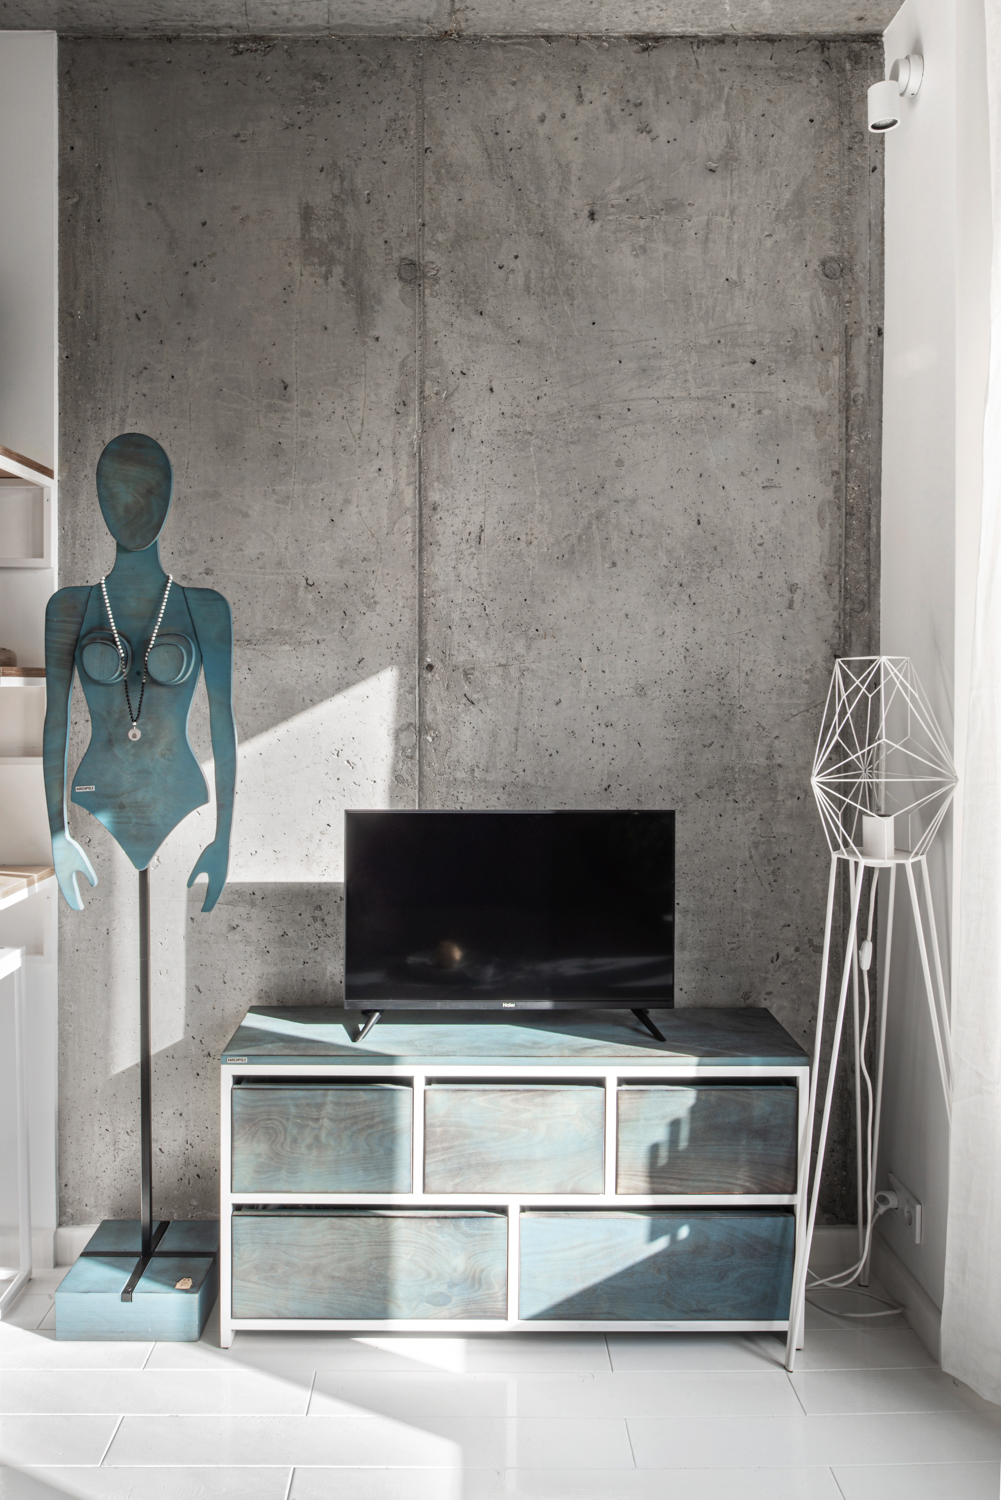 Tivi đối diện phòng khách được đặt trên chiếc tủ gỗ, bên cạnh là mô hình cô gái được làm bằng gỗ bạch dương với lớp sơn màu xanh cổ điển. 